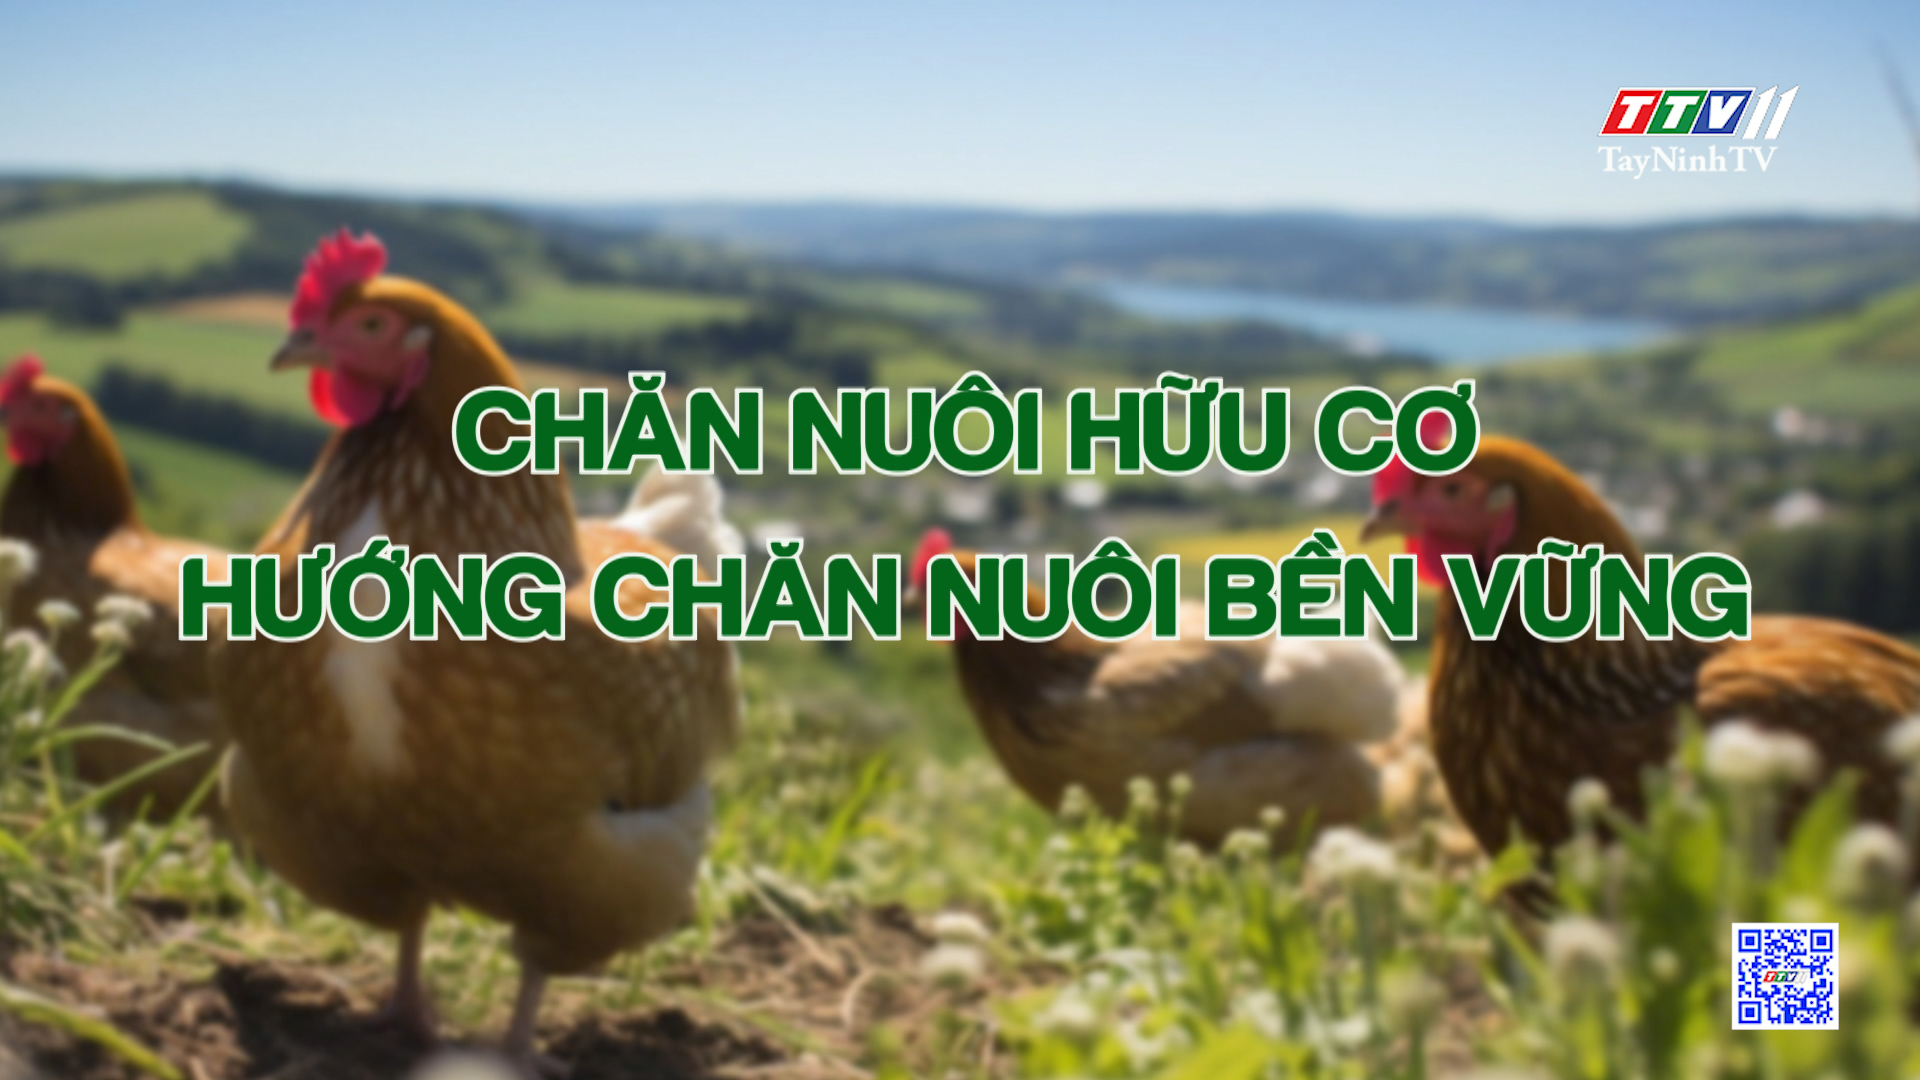 Chăn nuôi hữu cơ - hướng chăn nuôi bền vững | Nông nghiệp Tây Ninh | TayNinhTV